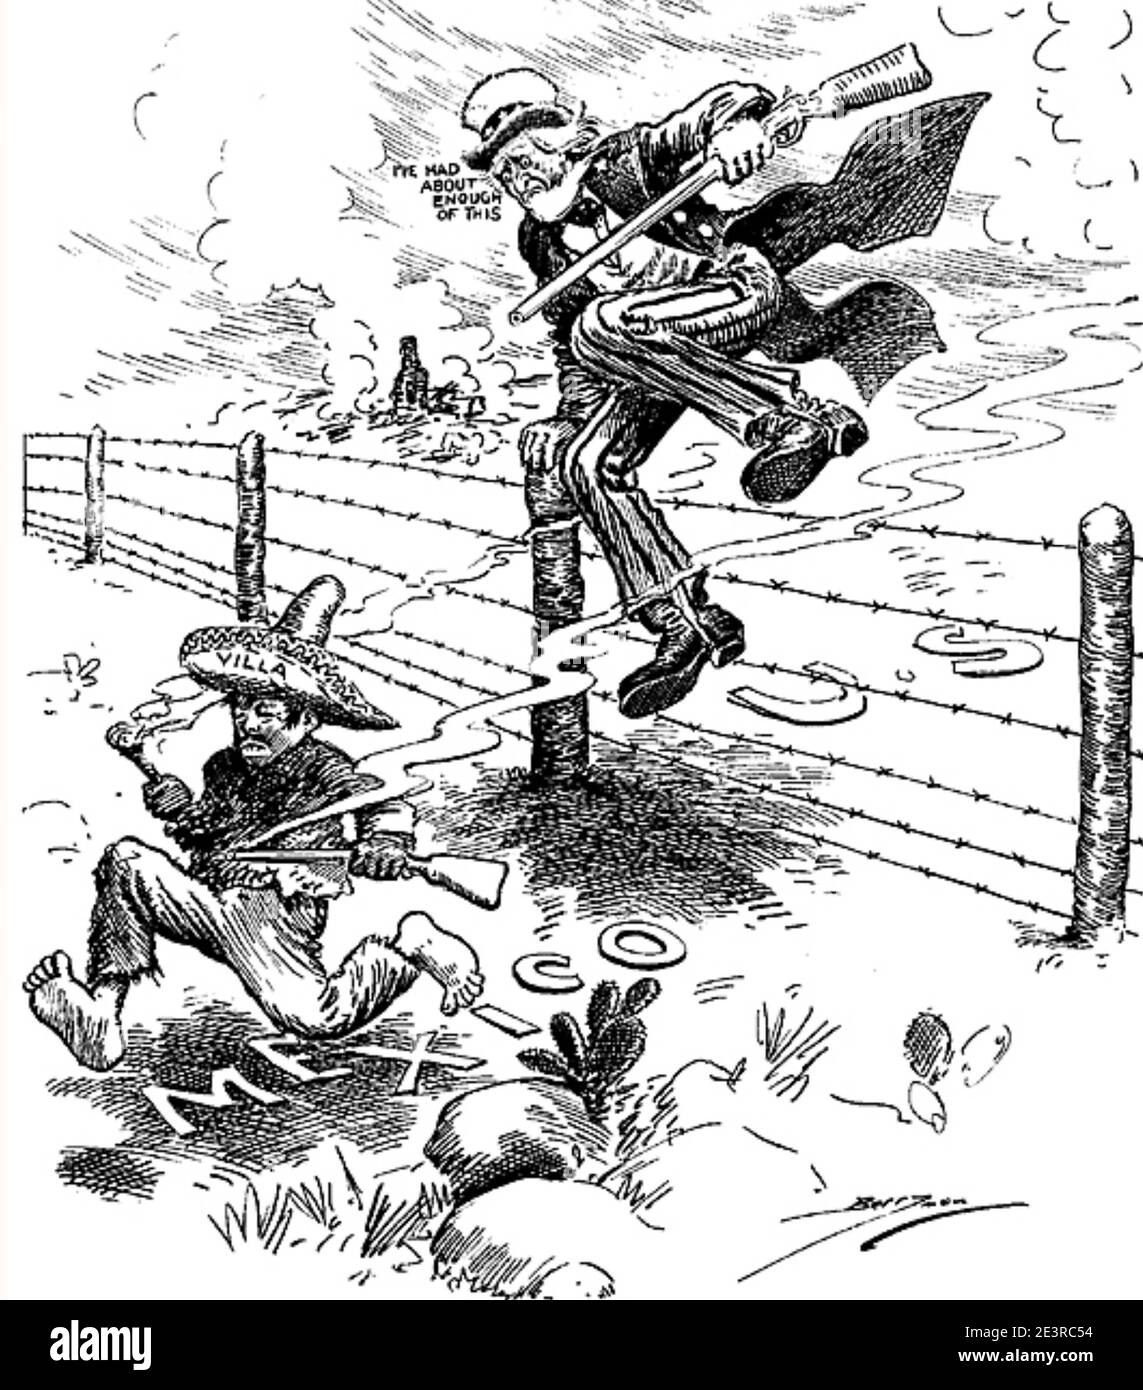 PANCHO VILLA (1878-1923) rivoluzionario messicano in un fumetto americano di 1914 mostrando lo zio Sam dicendo: 'Ne ho avuto abbastanza questo' Foto Stock